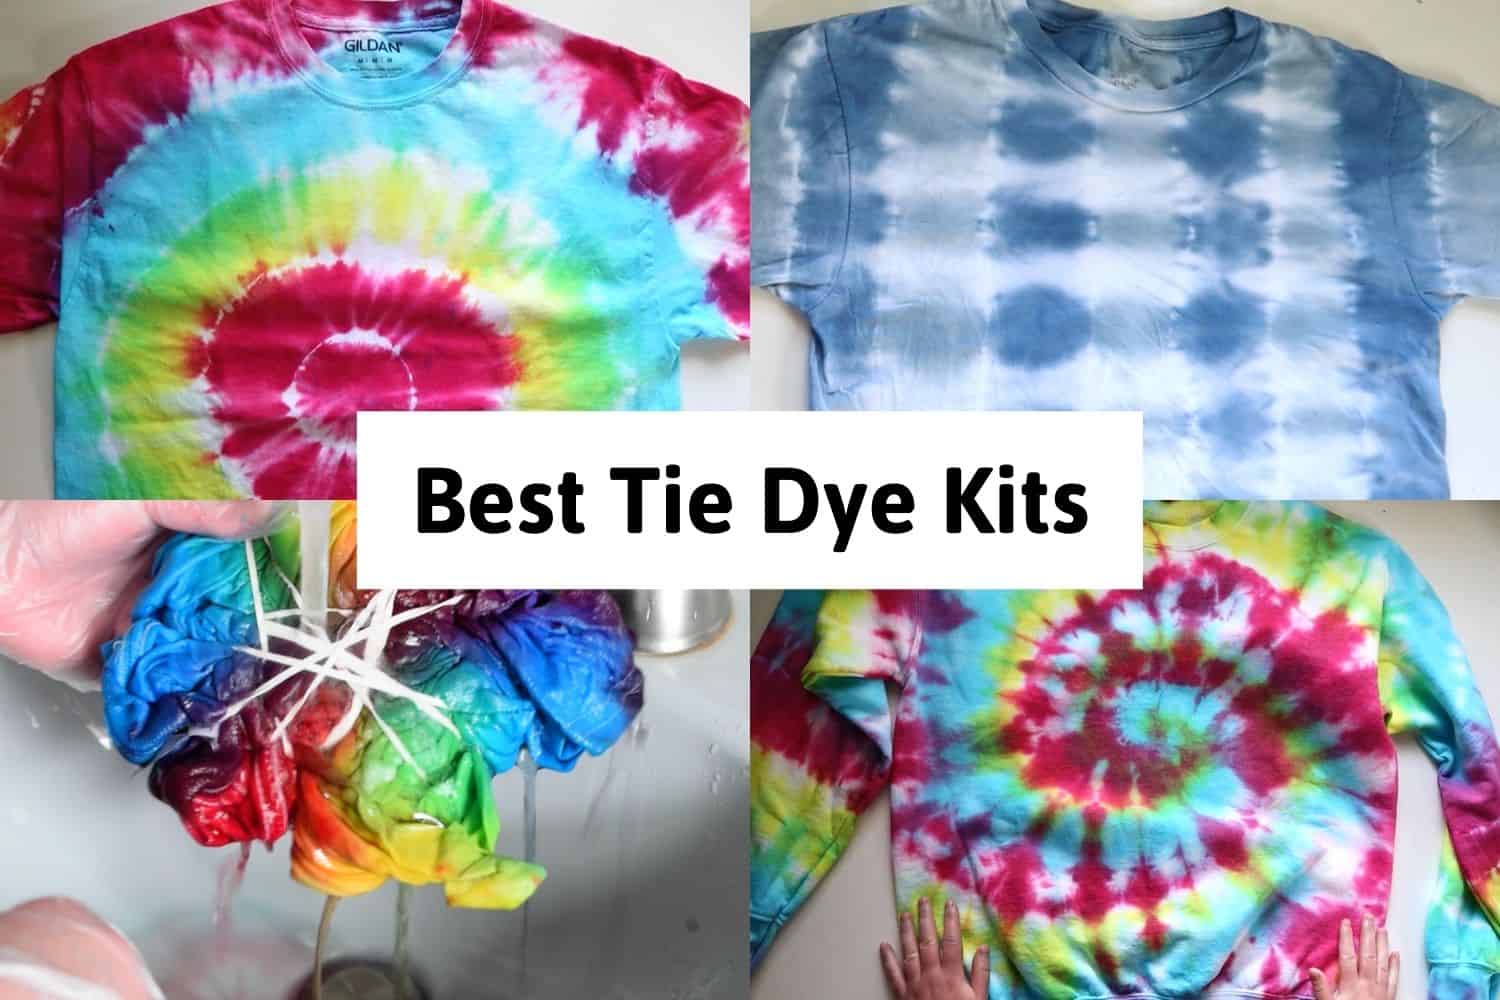 Large Tie-Dye Kit